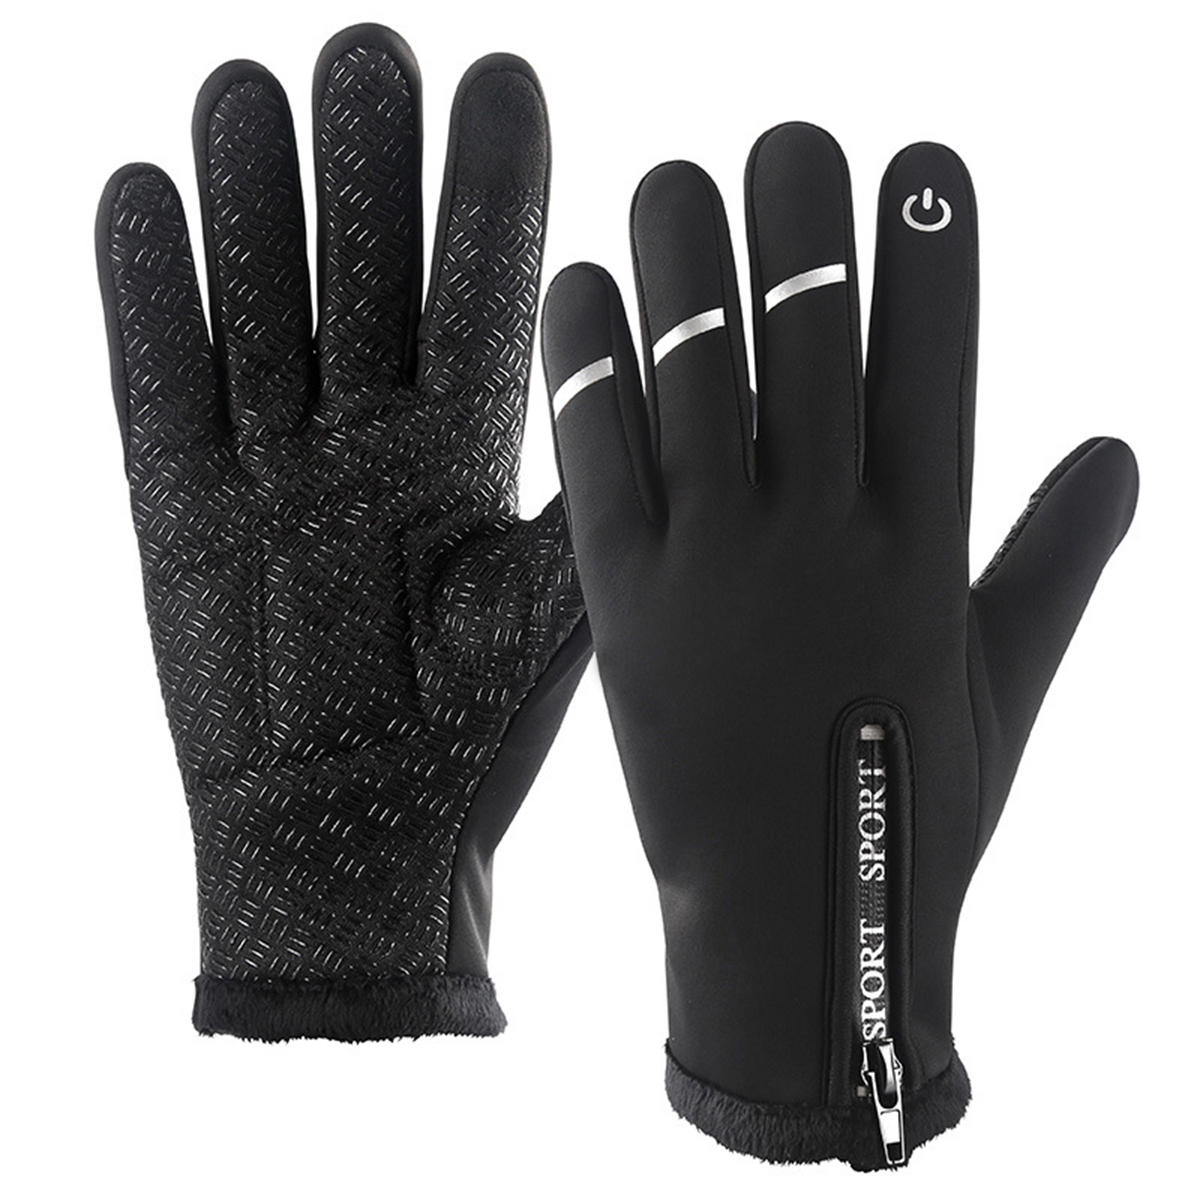 Winddicht antislip warme rijhandschoenen Thermische handschoen met touchscreen voor dames